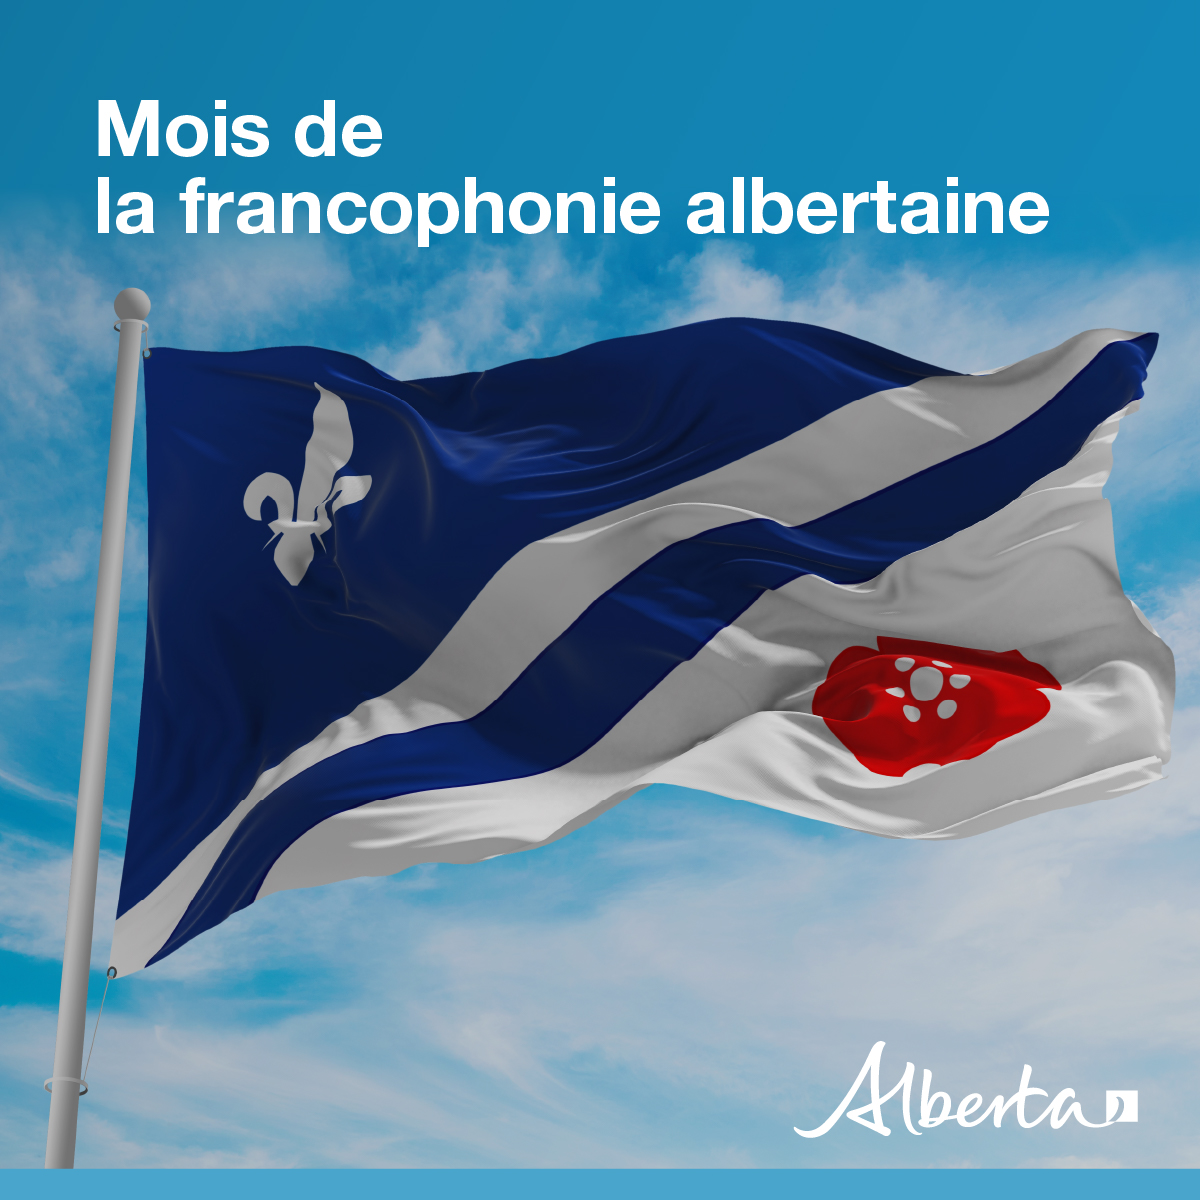 Déjà la fin! Merci d’avoir célébré le #moisFRAB avec nous.
Pour obtenir des services et ressources en français toute l’année, et pour mieux connaître la Politique en matière de francophonie et le patrimoine francophone de l’Alberta, visitez : alberta.ca/fr-CA/bonjour-…